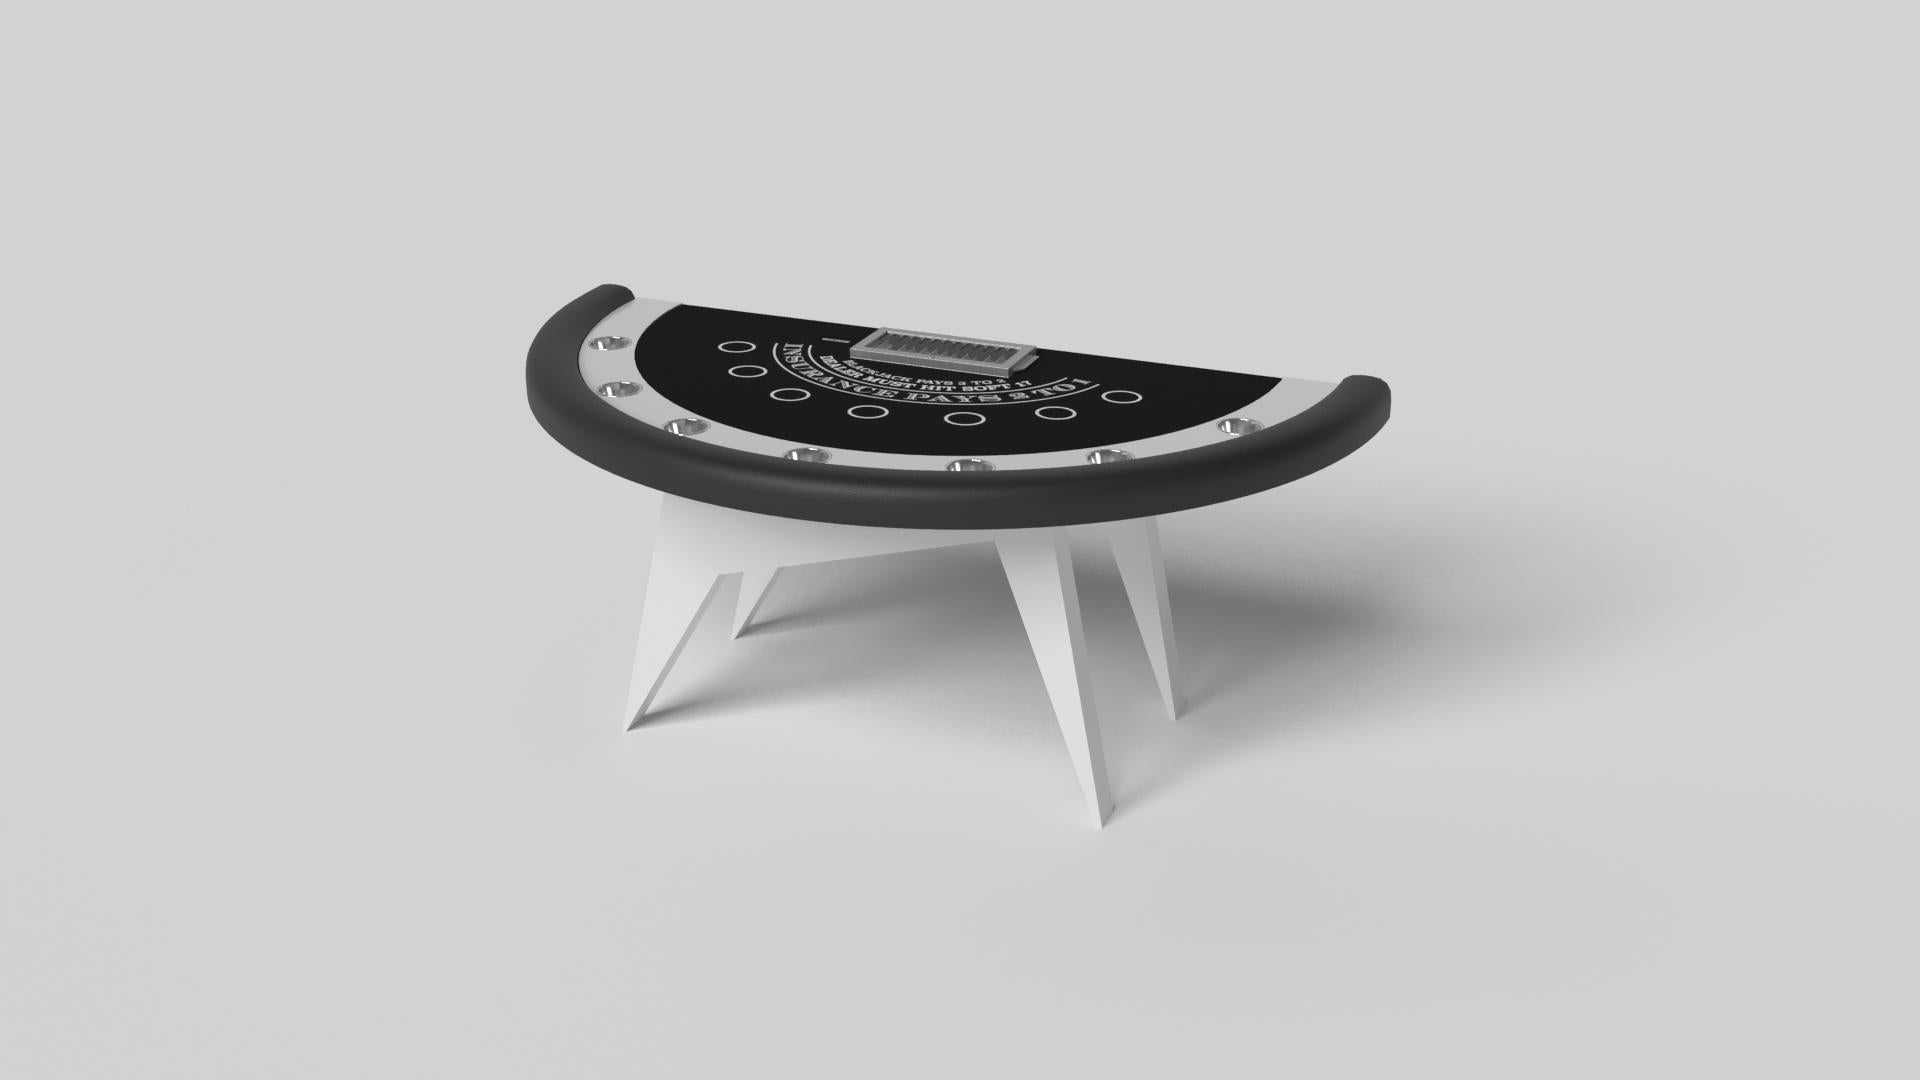 Simple mais sophistiquée, la table de blackjack Mantis apporte une touche de fraîcheur et de modernité à un design classique à quatre pattes. Les angles vifs et les pieds fuselés assurent une stabilité élégante.

Taille :

88 